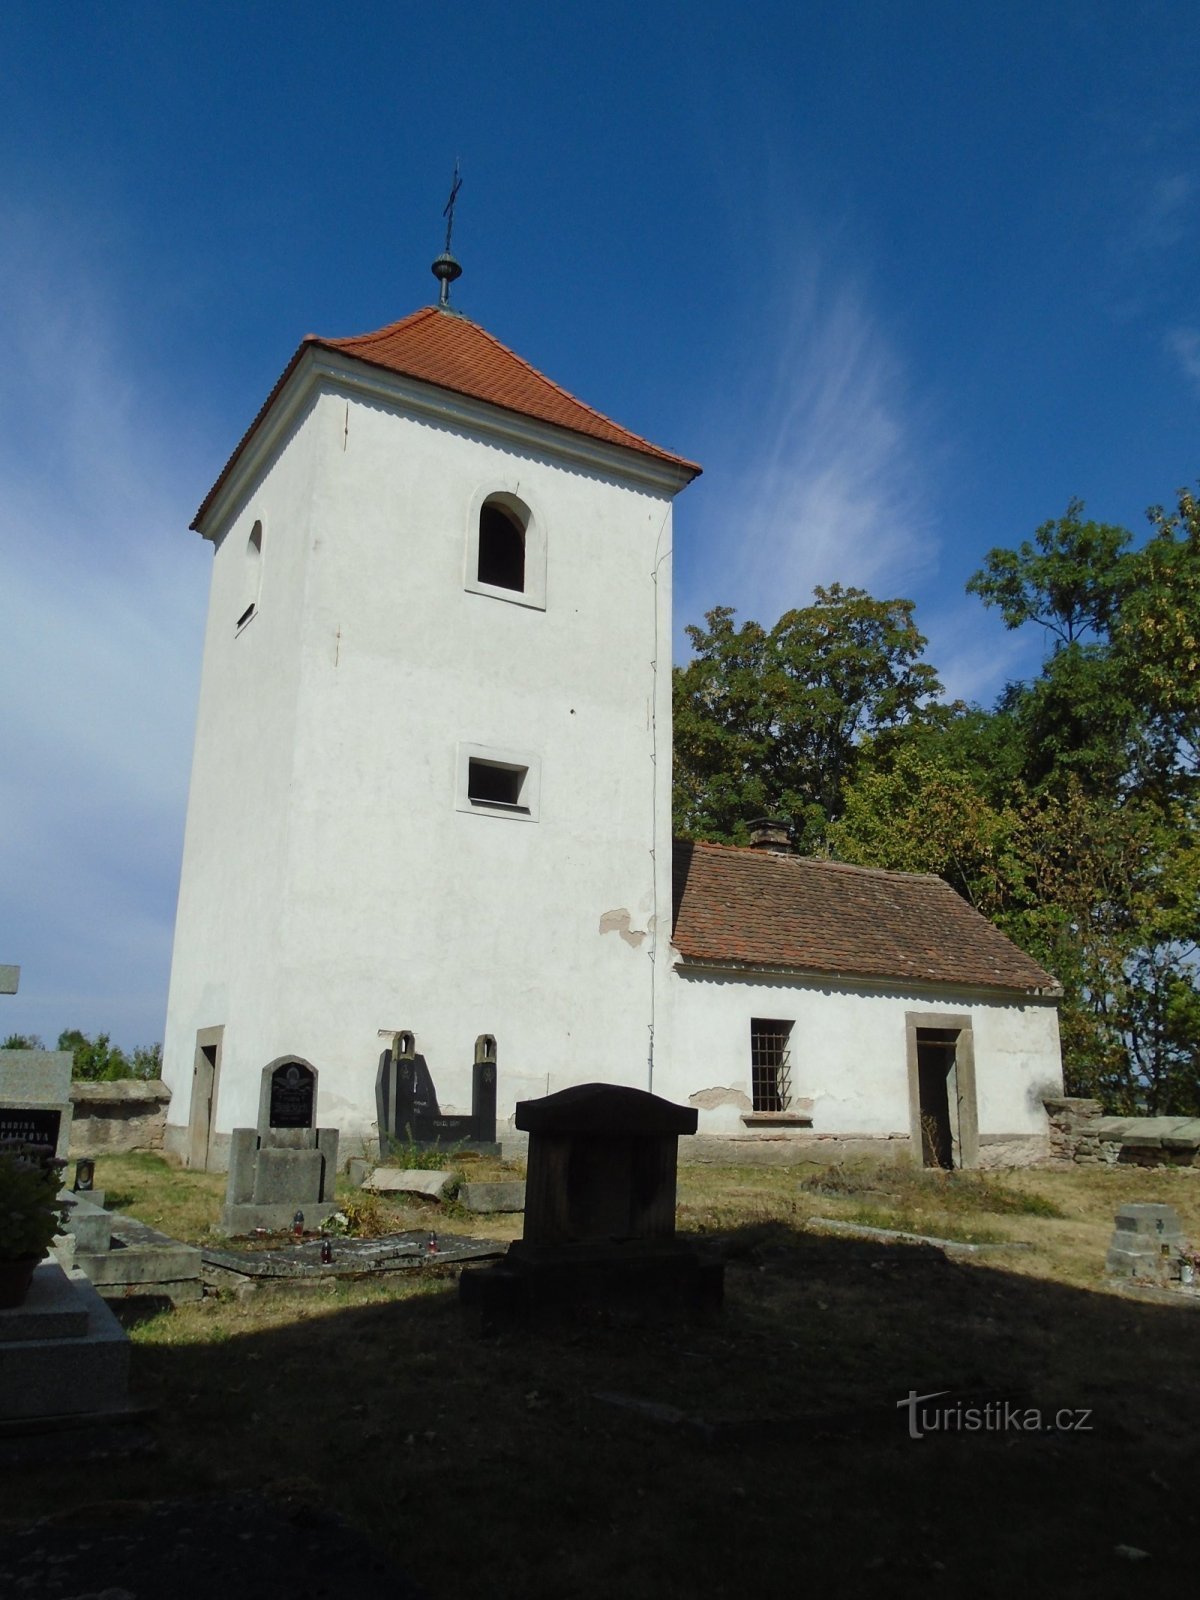 Dzwonnica z mieszkaniem dla grabarza przy kościele św. Wacław (Habřina, 9.9.2018)